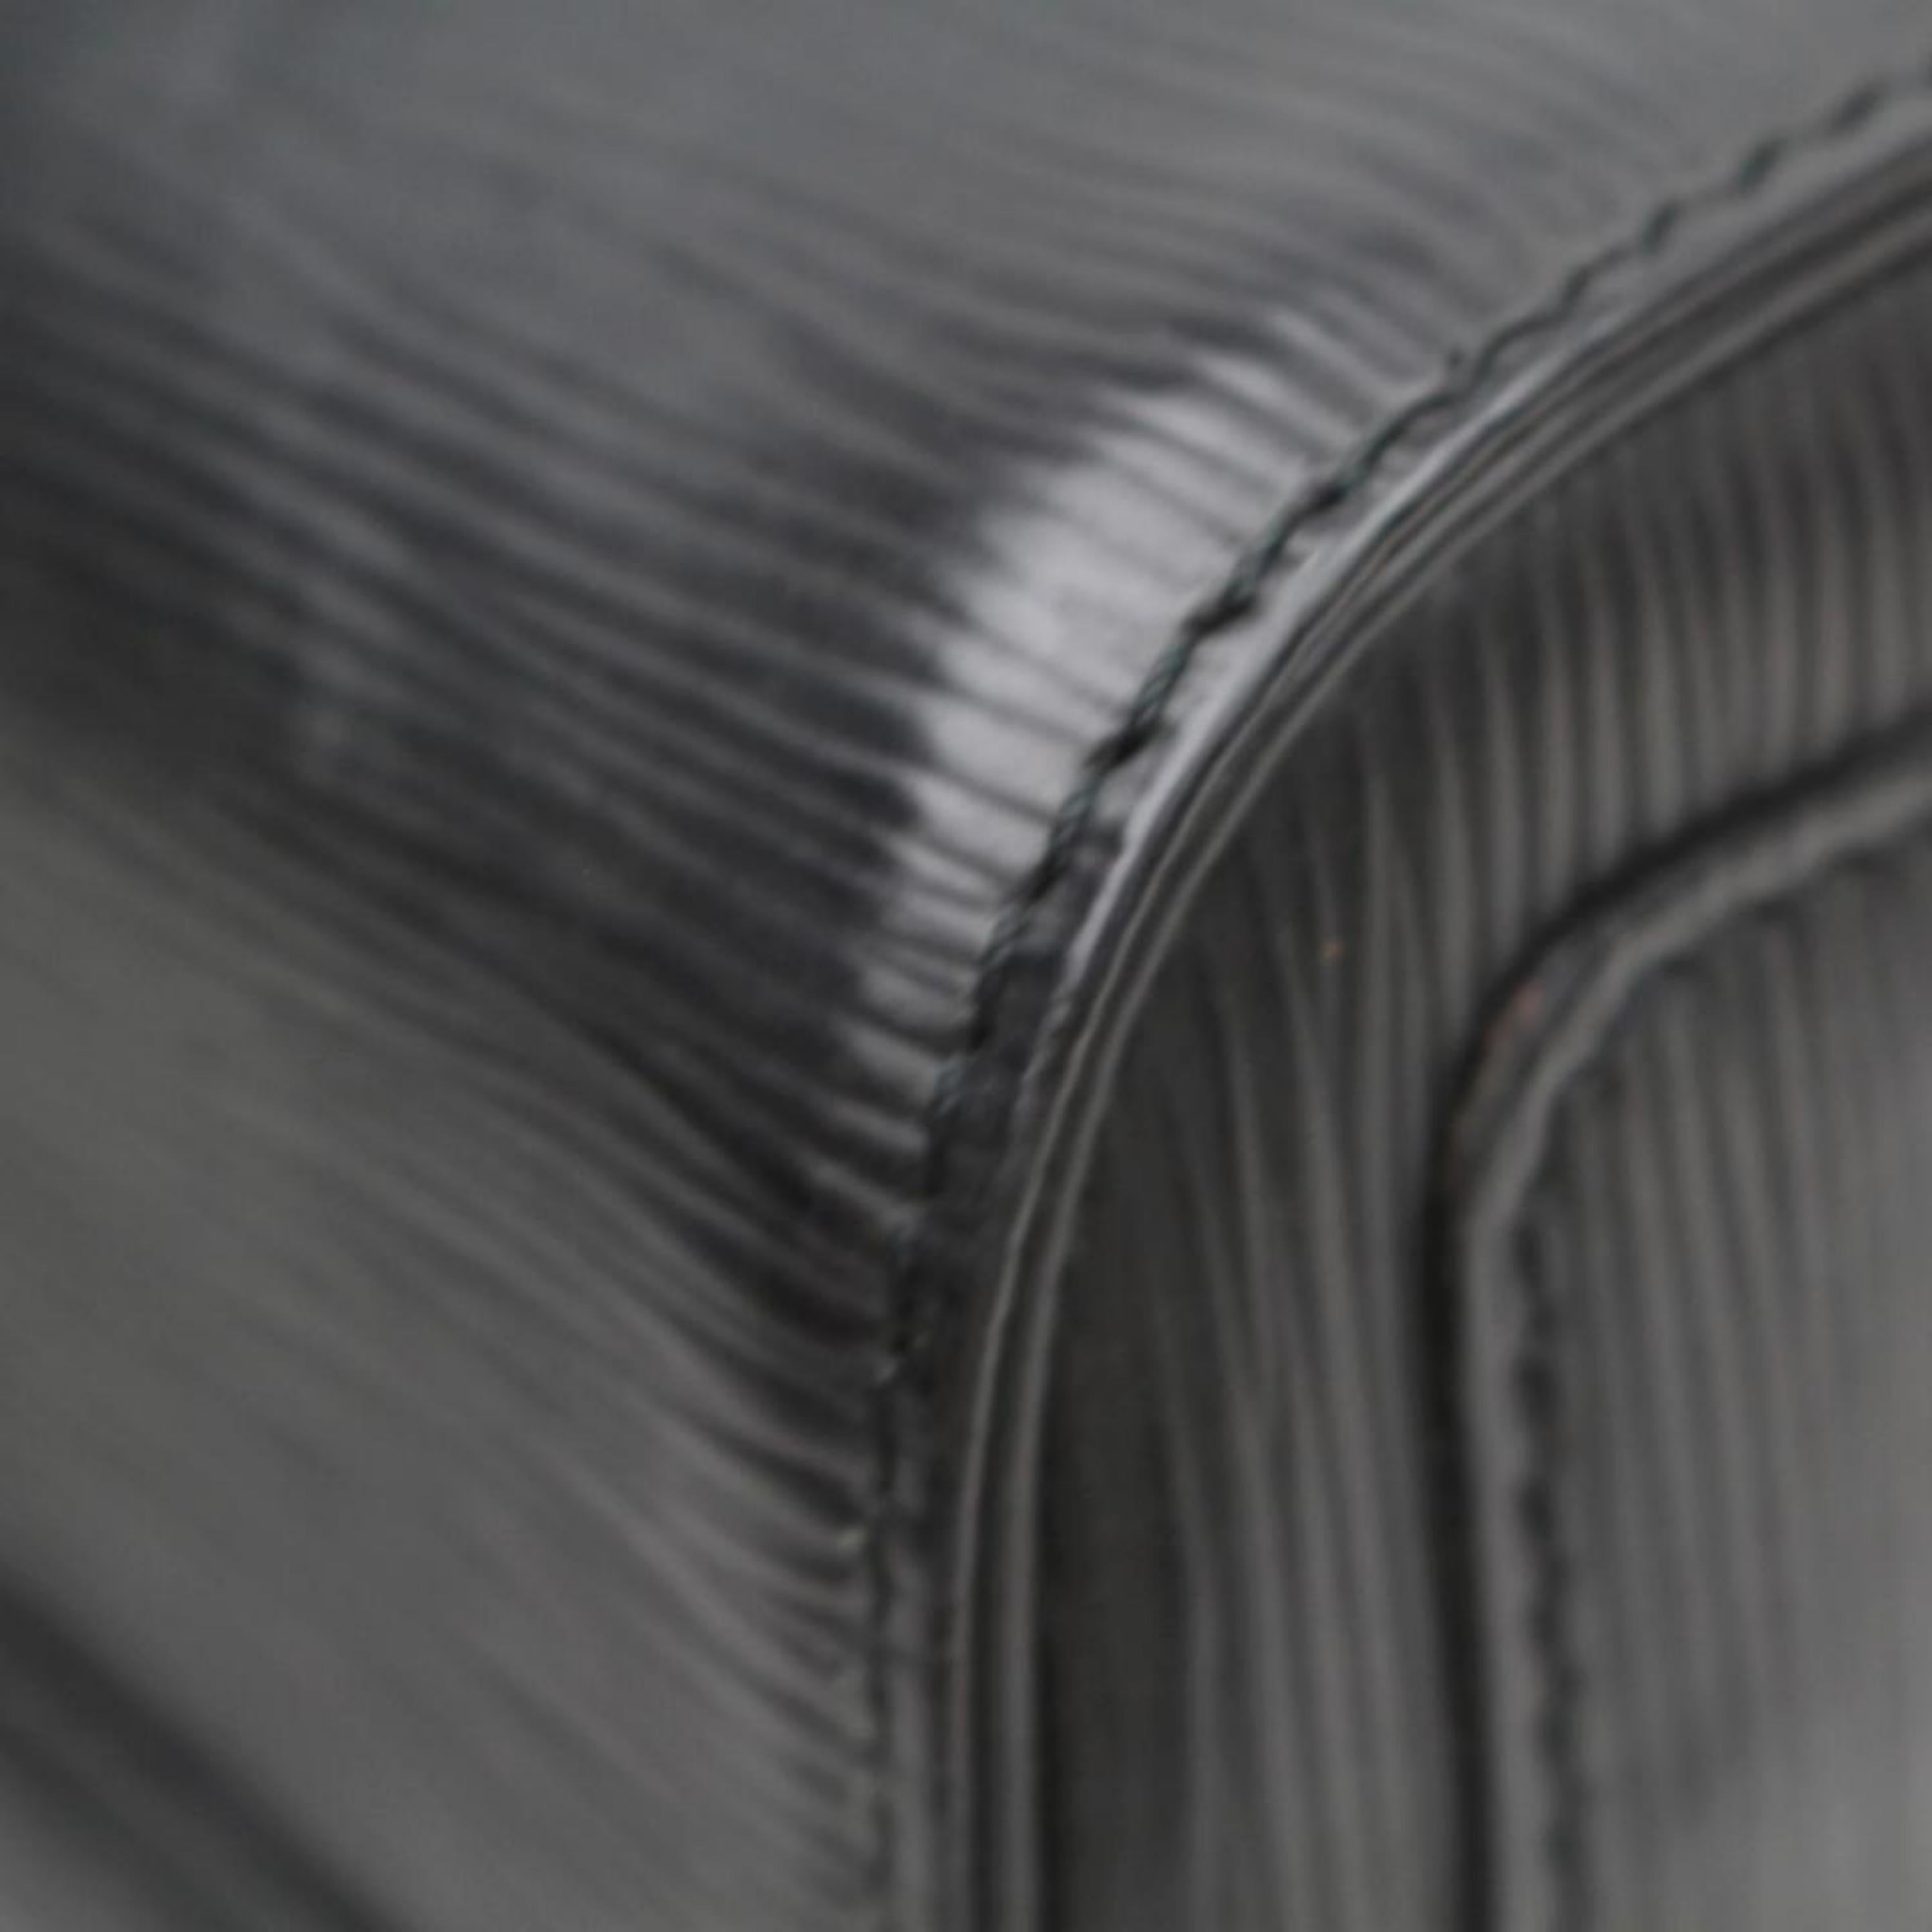 Louis Vuitton Speedy Noir 25 869188 Black Leather Satchel For Sale 6